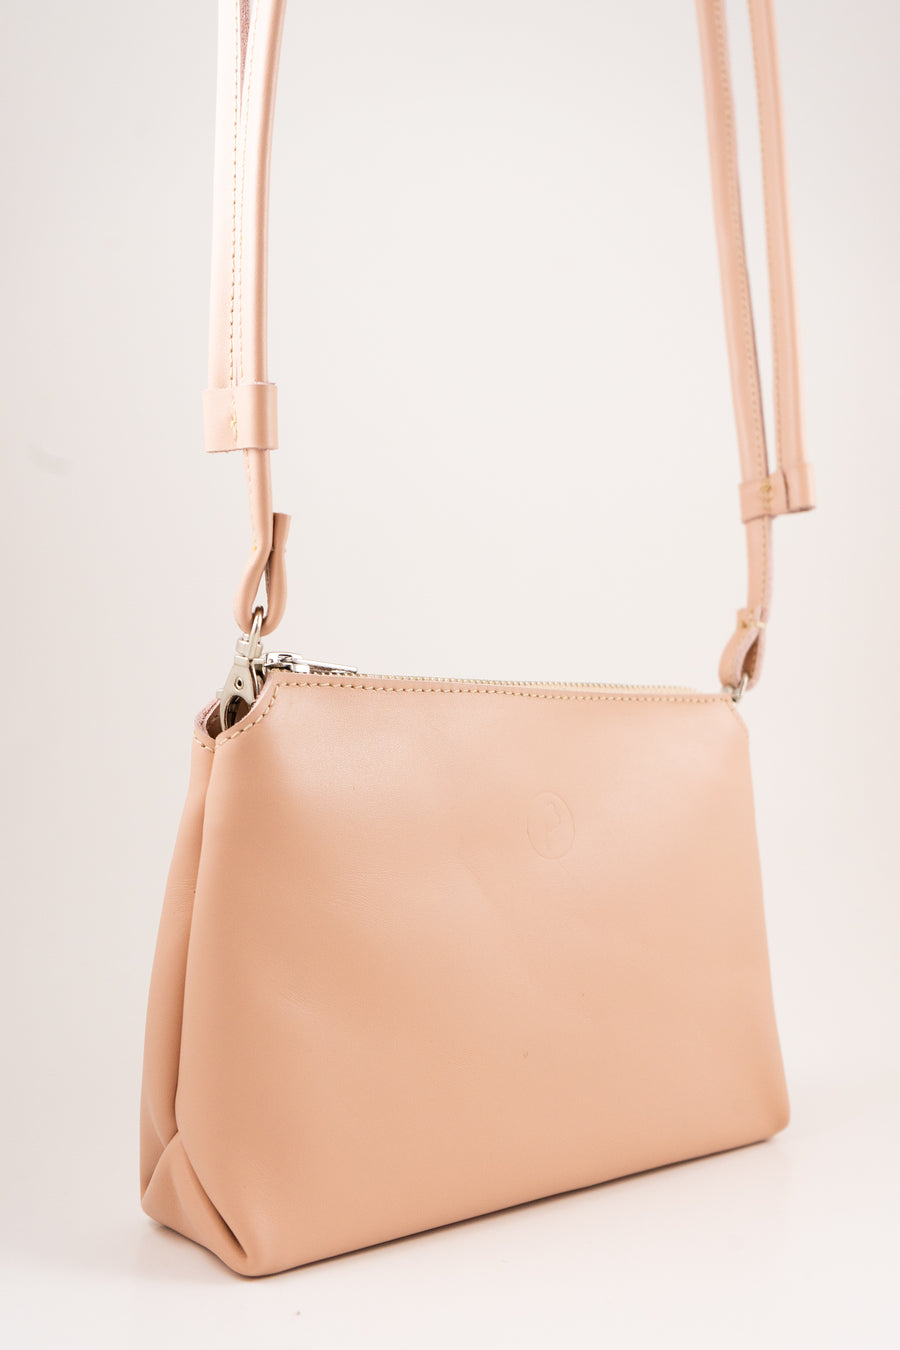 BELA shoulder bag – blush